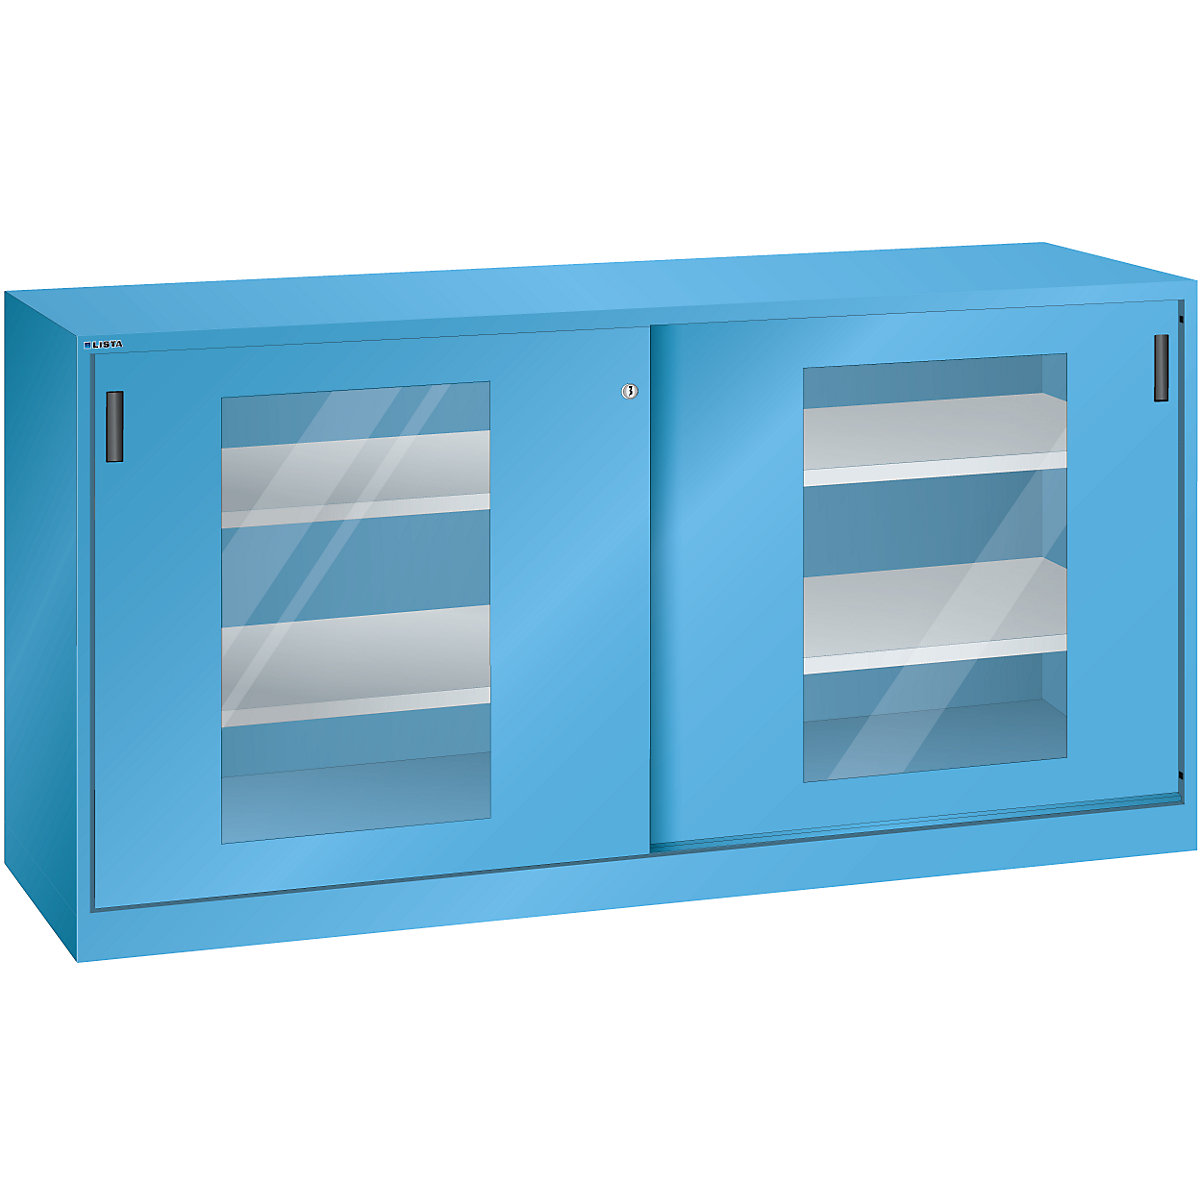 Sliding door cupboard with vision panel doors - LISTA